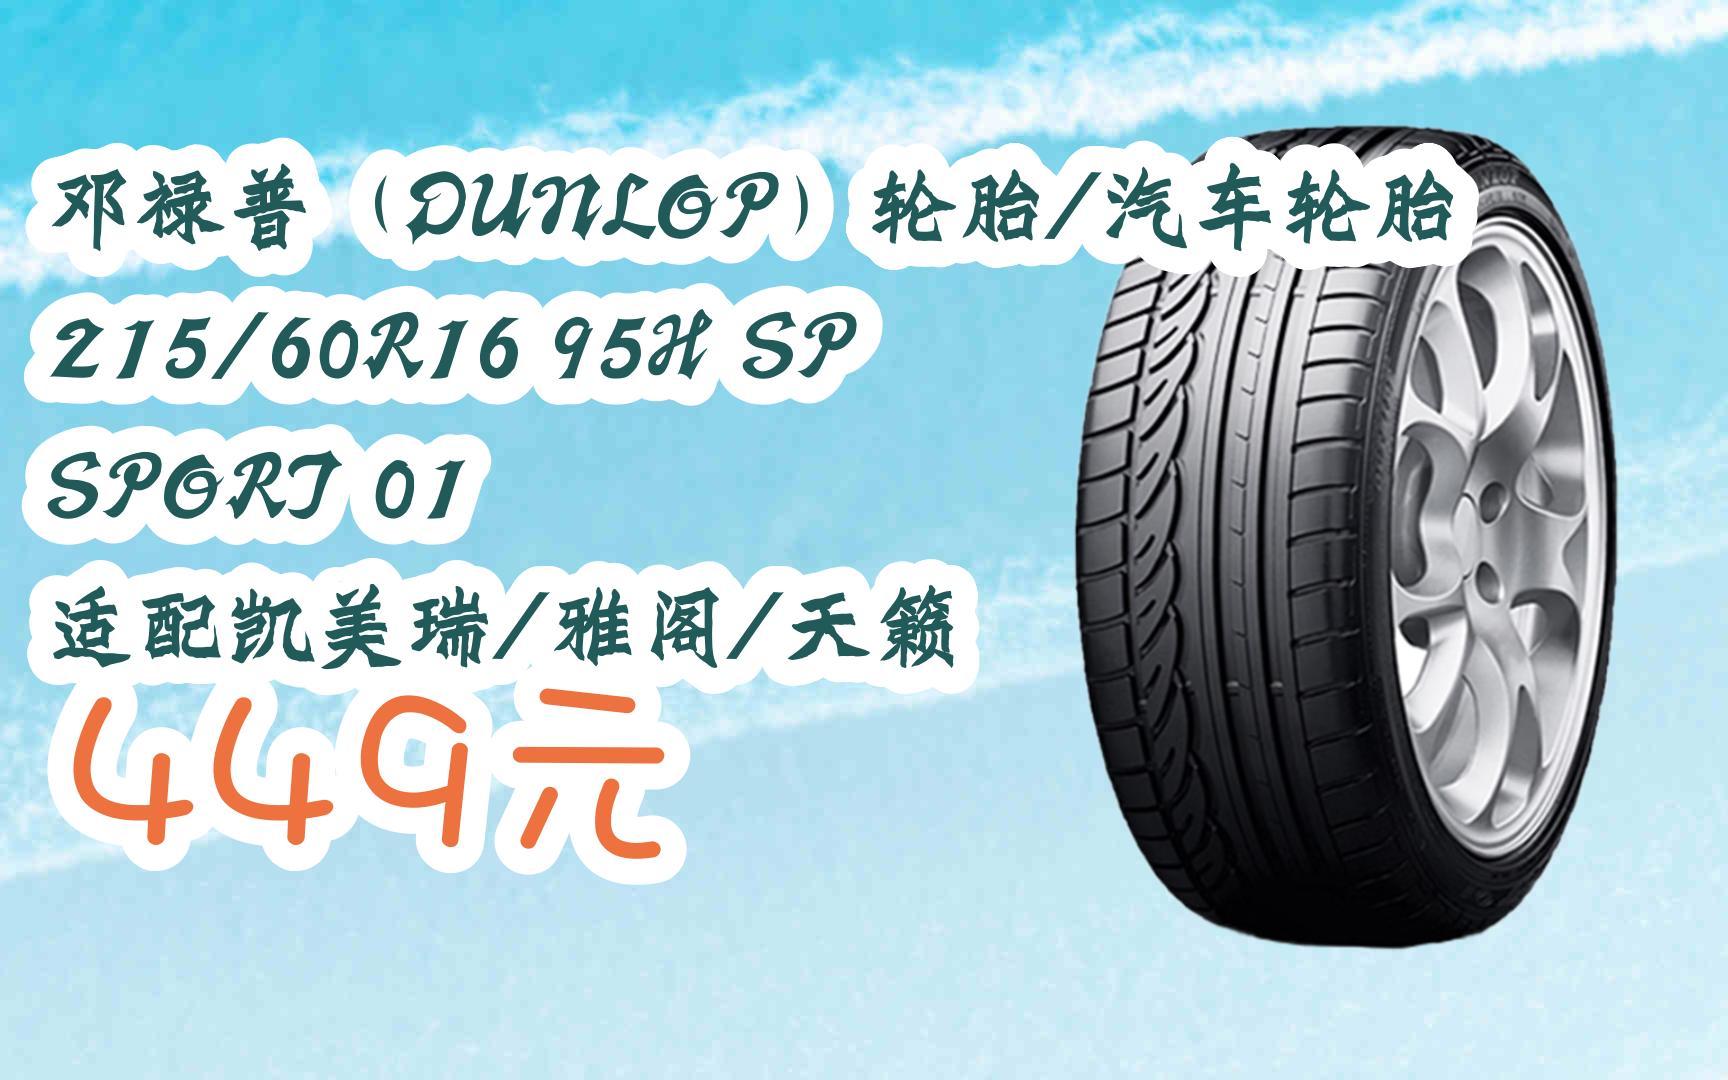 【11好礼】邓禄普(dunlop)轮胎/汽车轮胎 215/60r16 95h sp sport 01